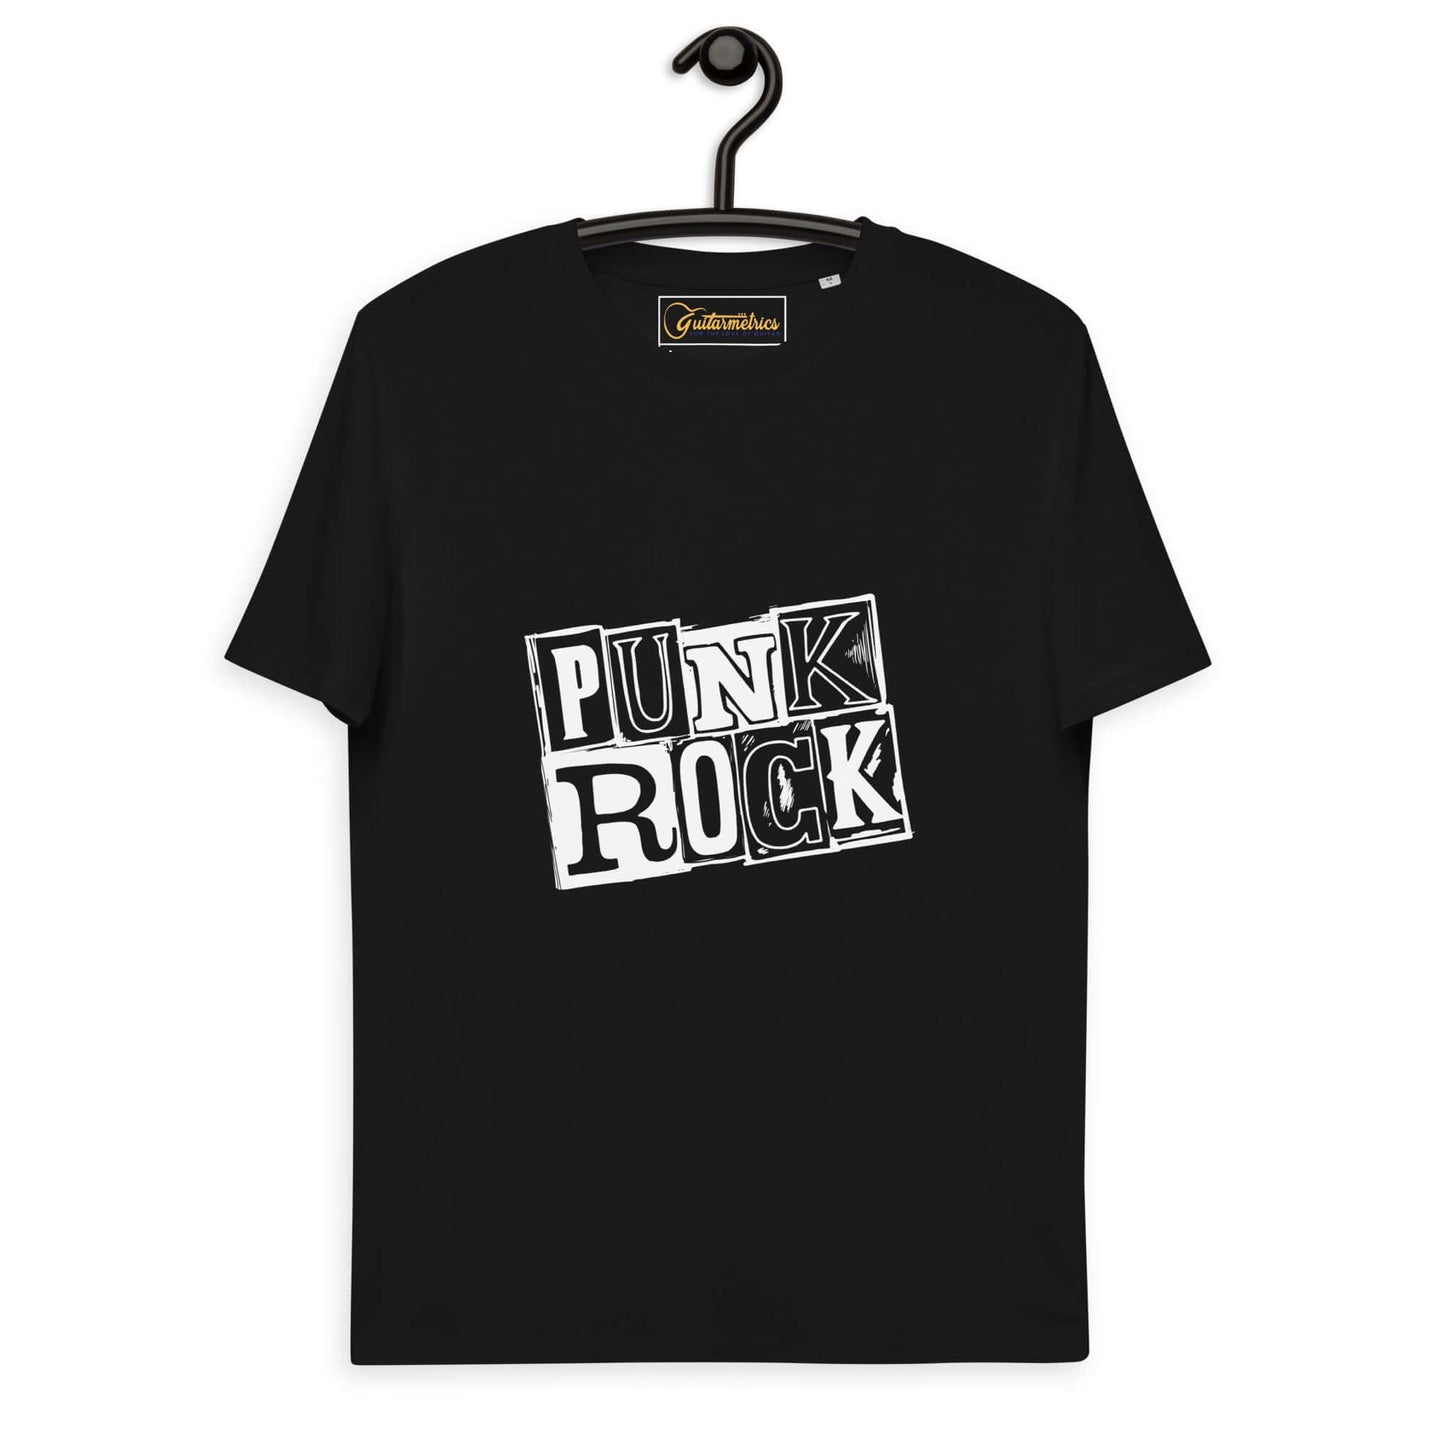 Punk Rock Unisex organic cotton t-shirt Black guitarmetrics